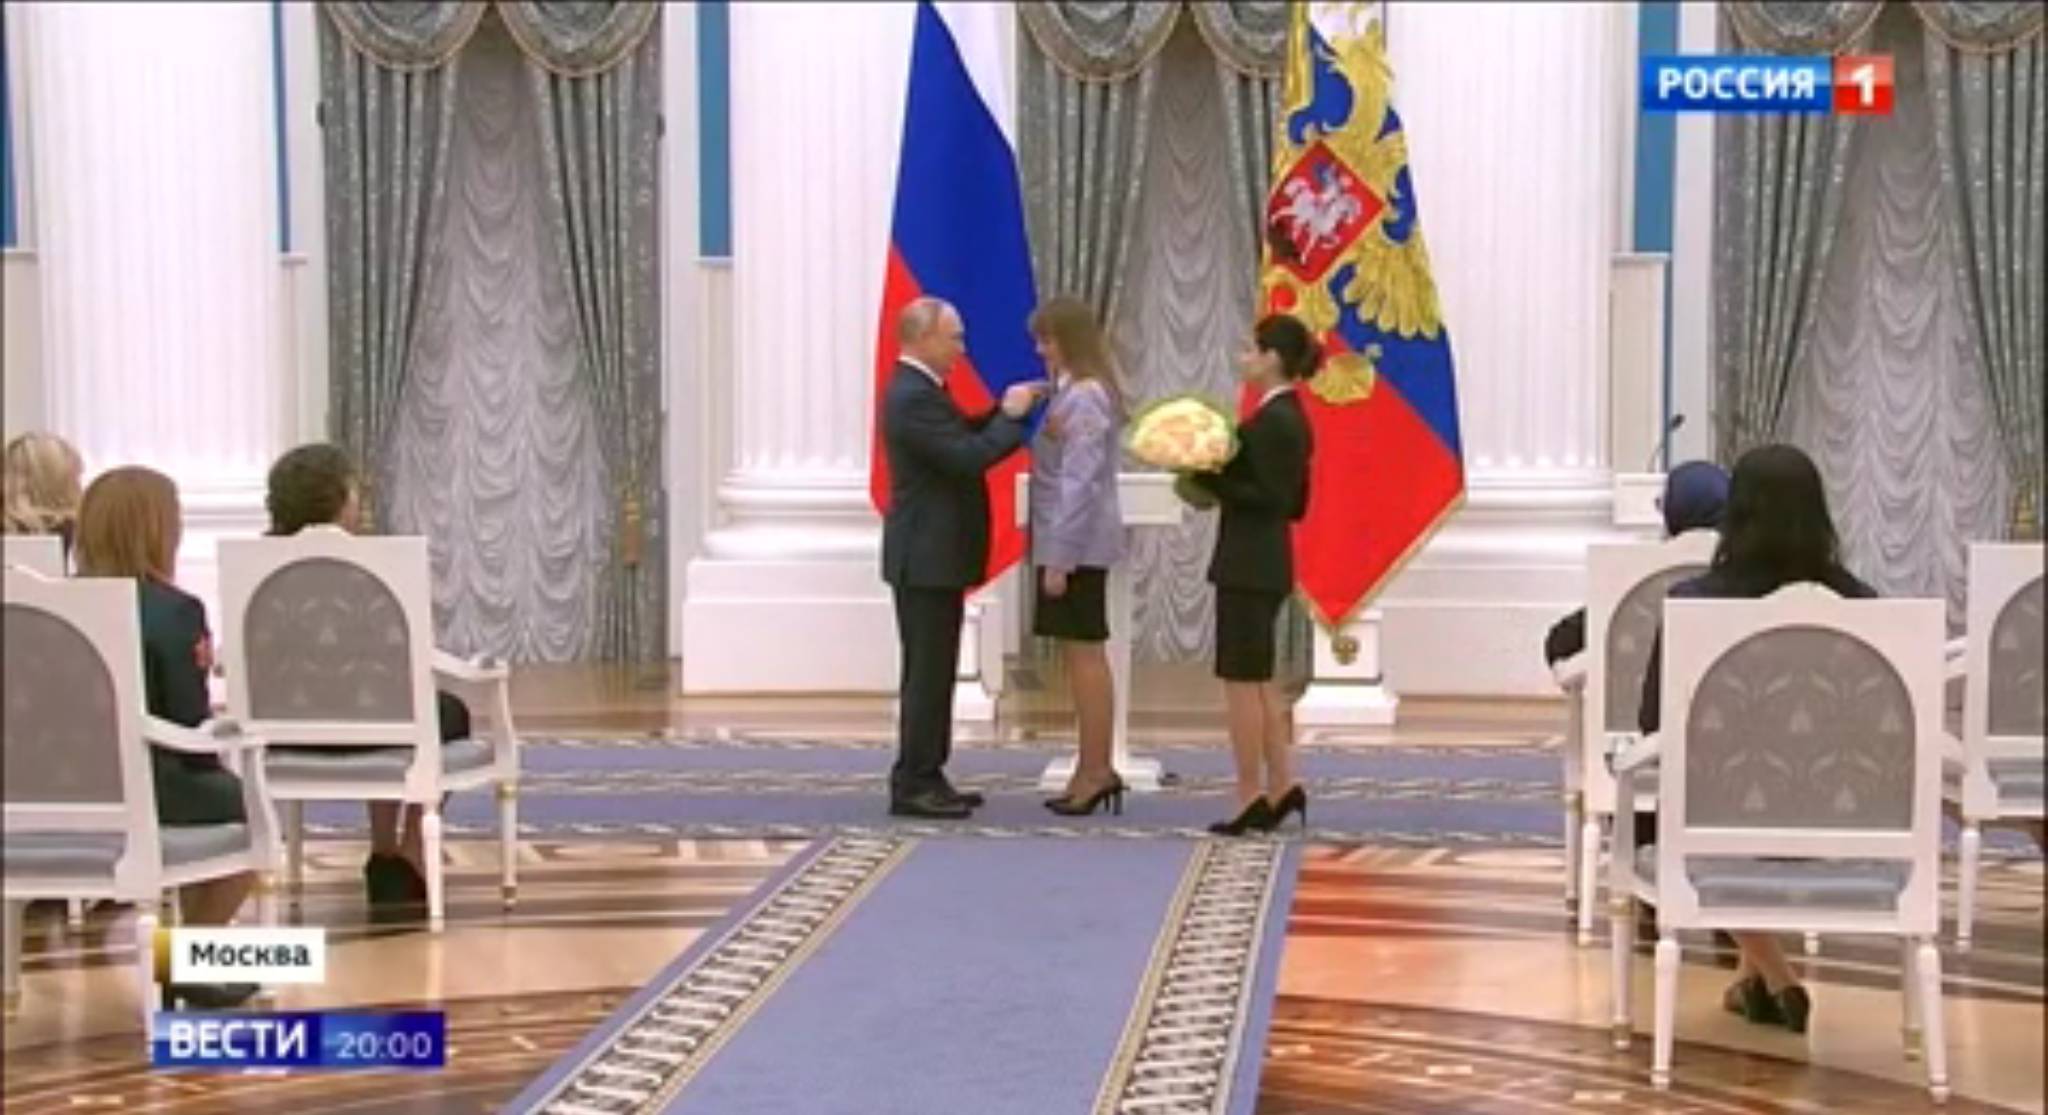 Putin w sali pałacowej przypina kobiecie order. Z boku stoi inna kobieta z bukietem żołtych kwiatów, które Putin zaraz wręczy odznaczonej